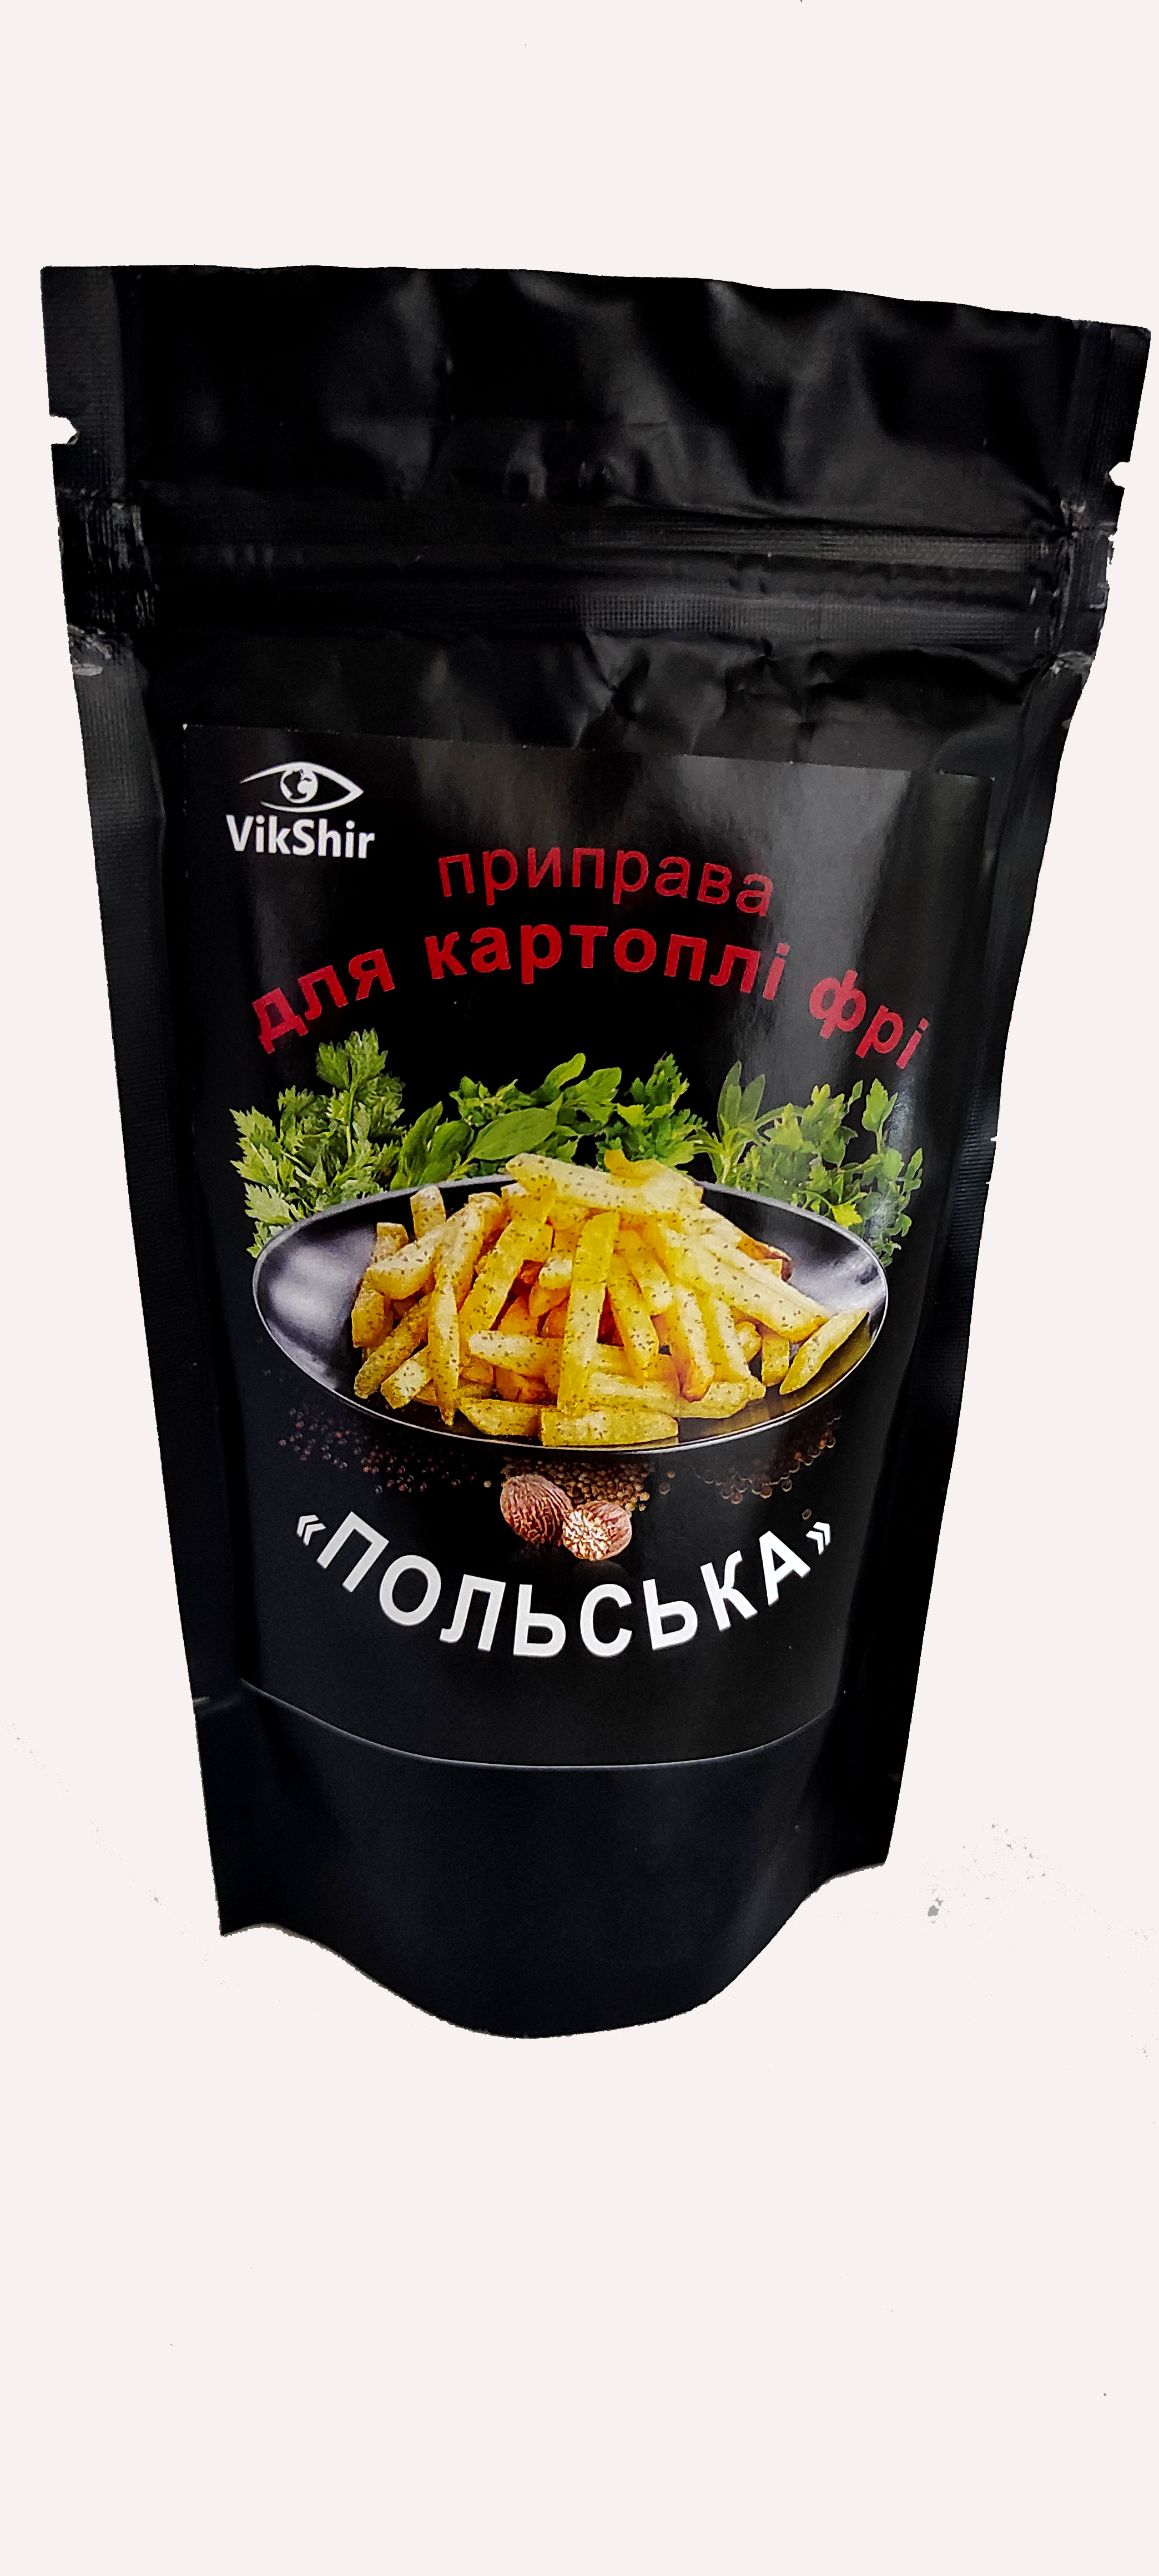 Приправа для картофеля фри VikShir Польская 60 г